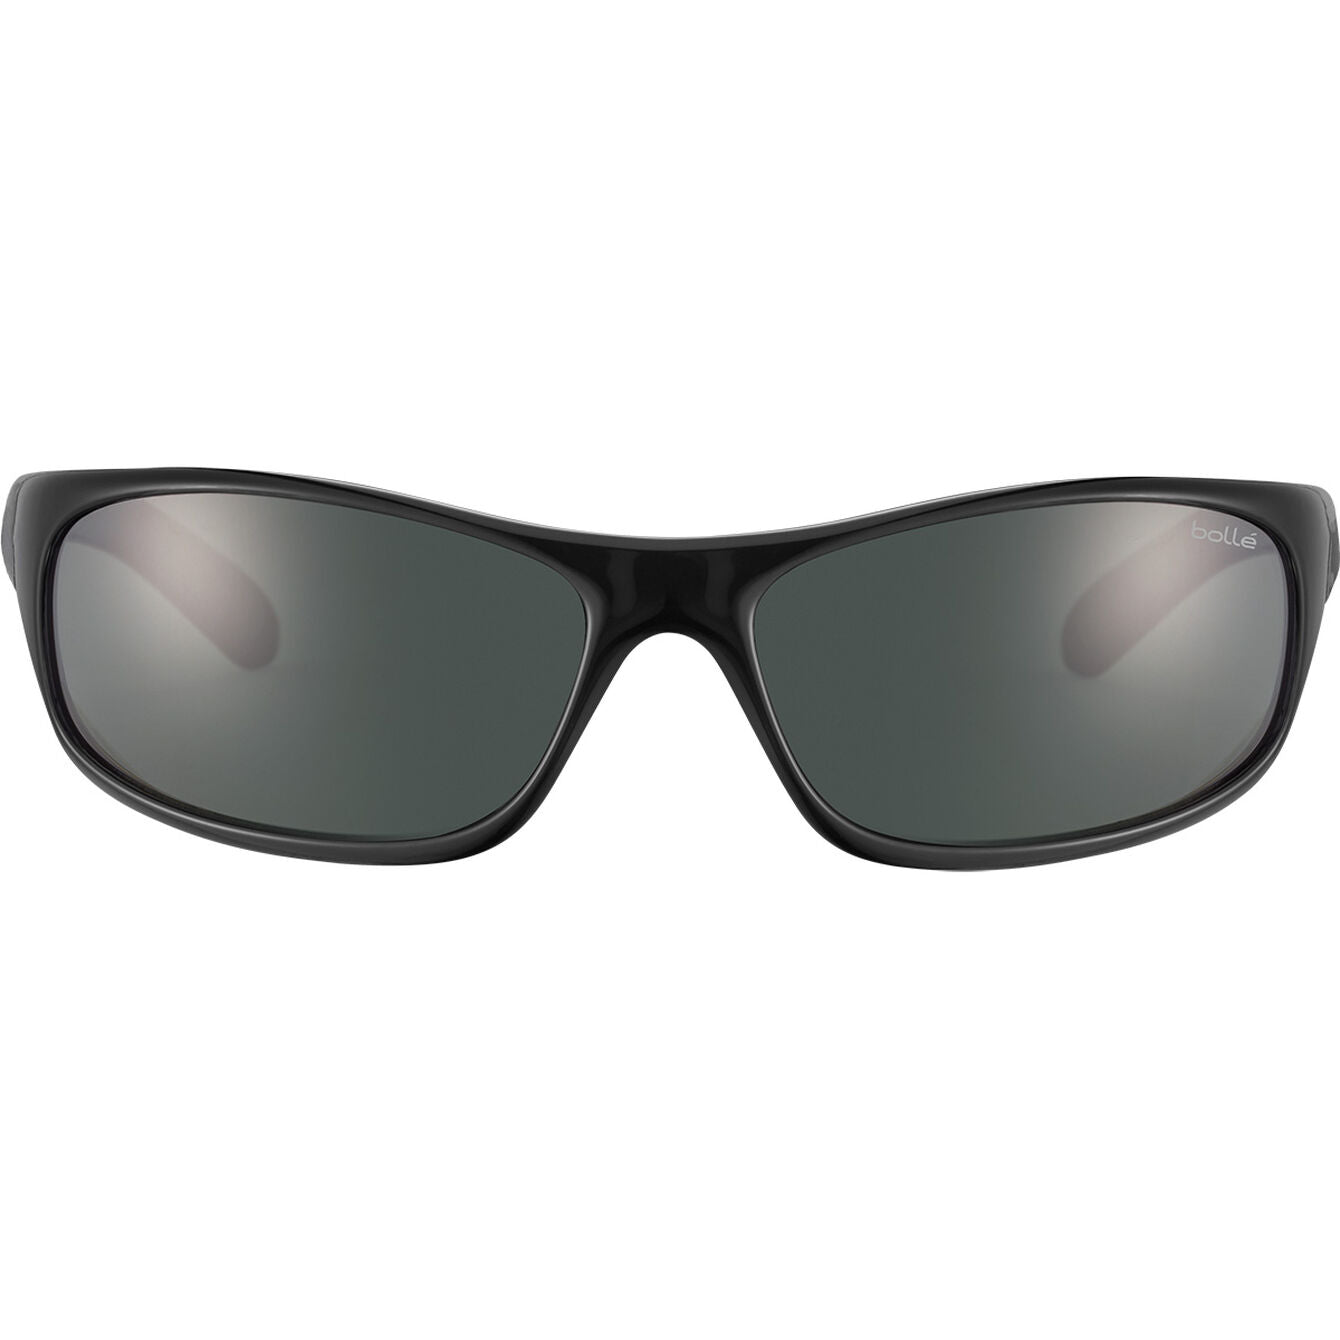 Bolle 10338 Anaconda Sunglasses -  Black Shiny - HD Polarized TNS